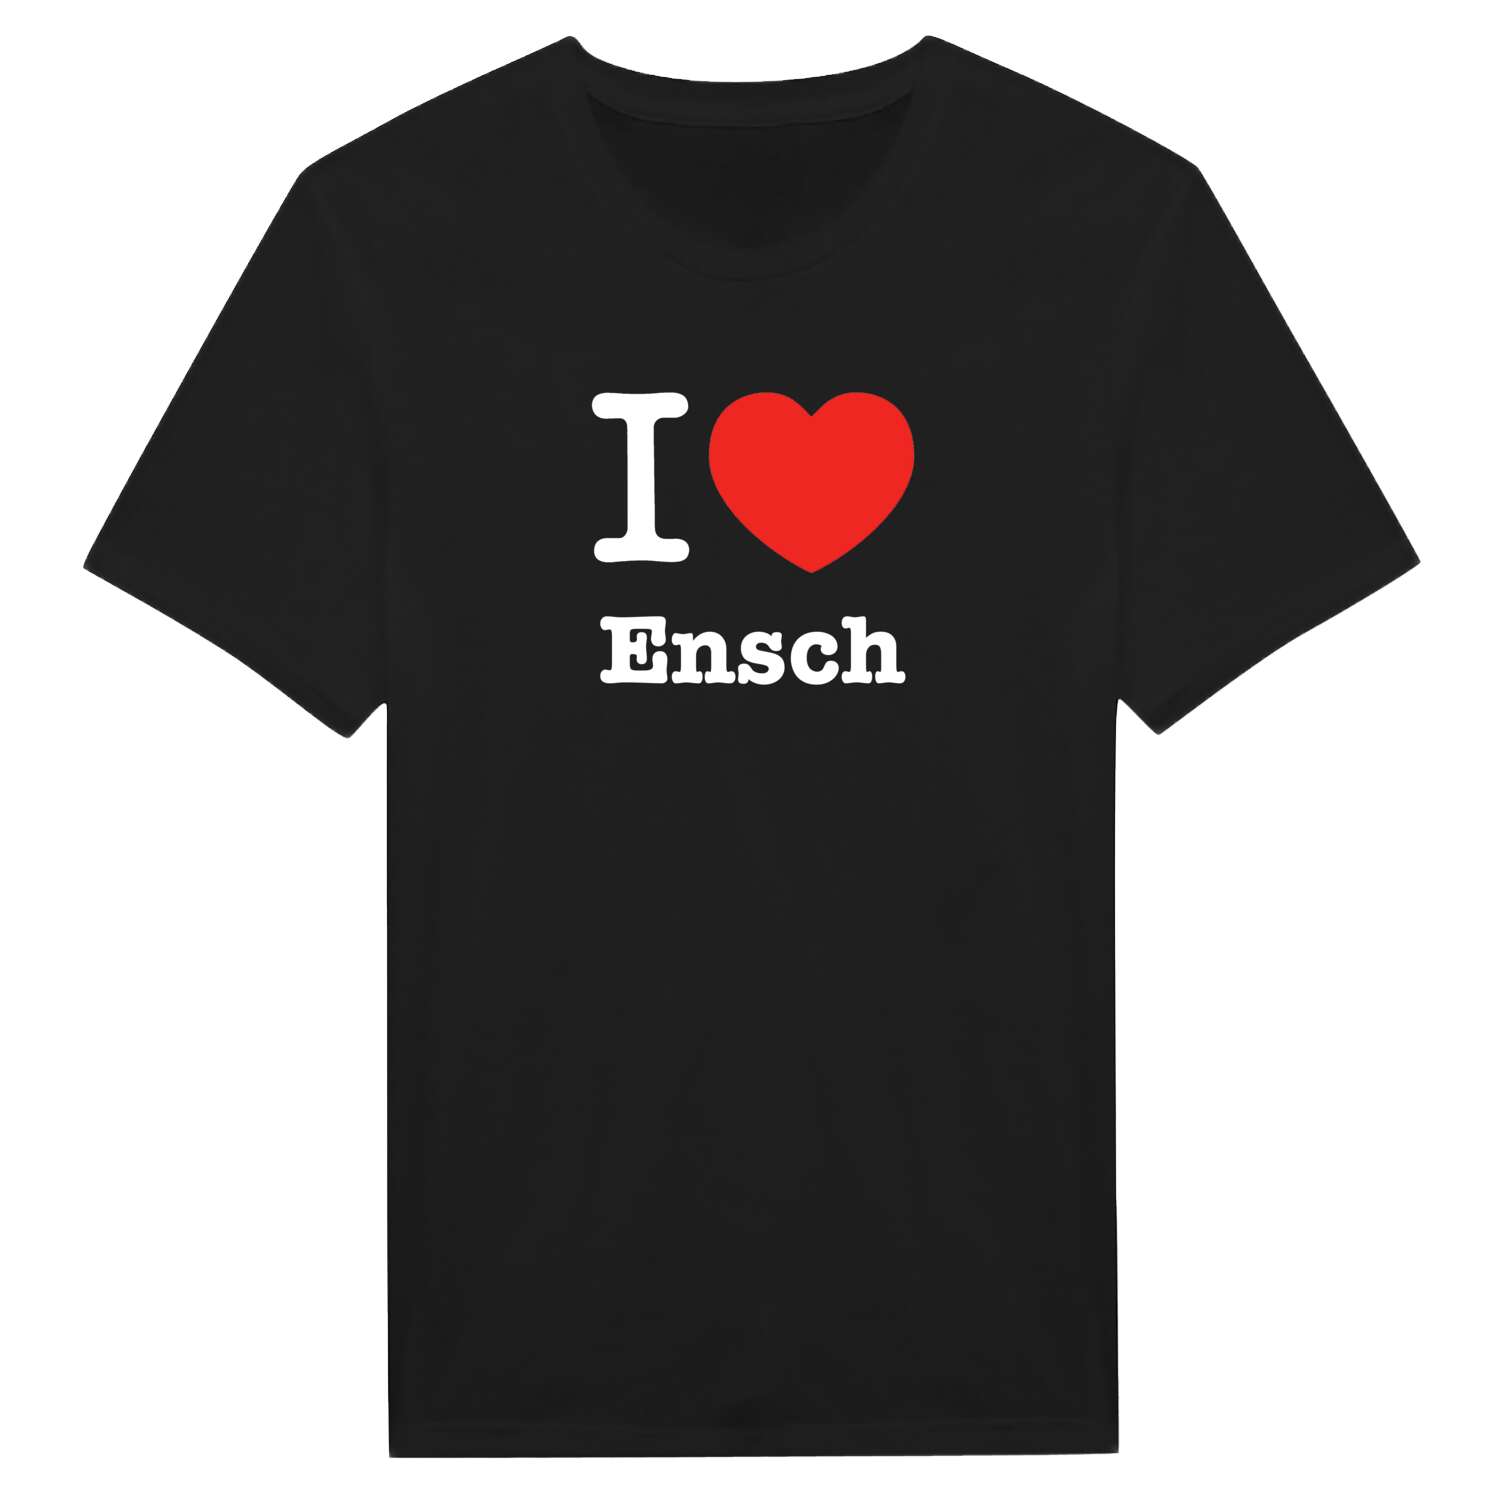 Ensch T-Shirt »I love«